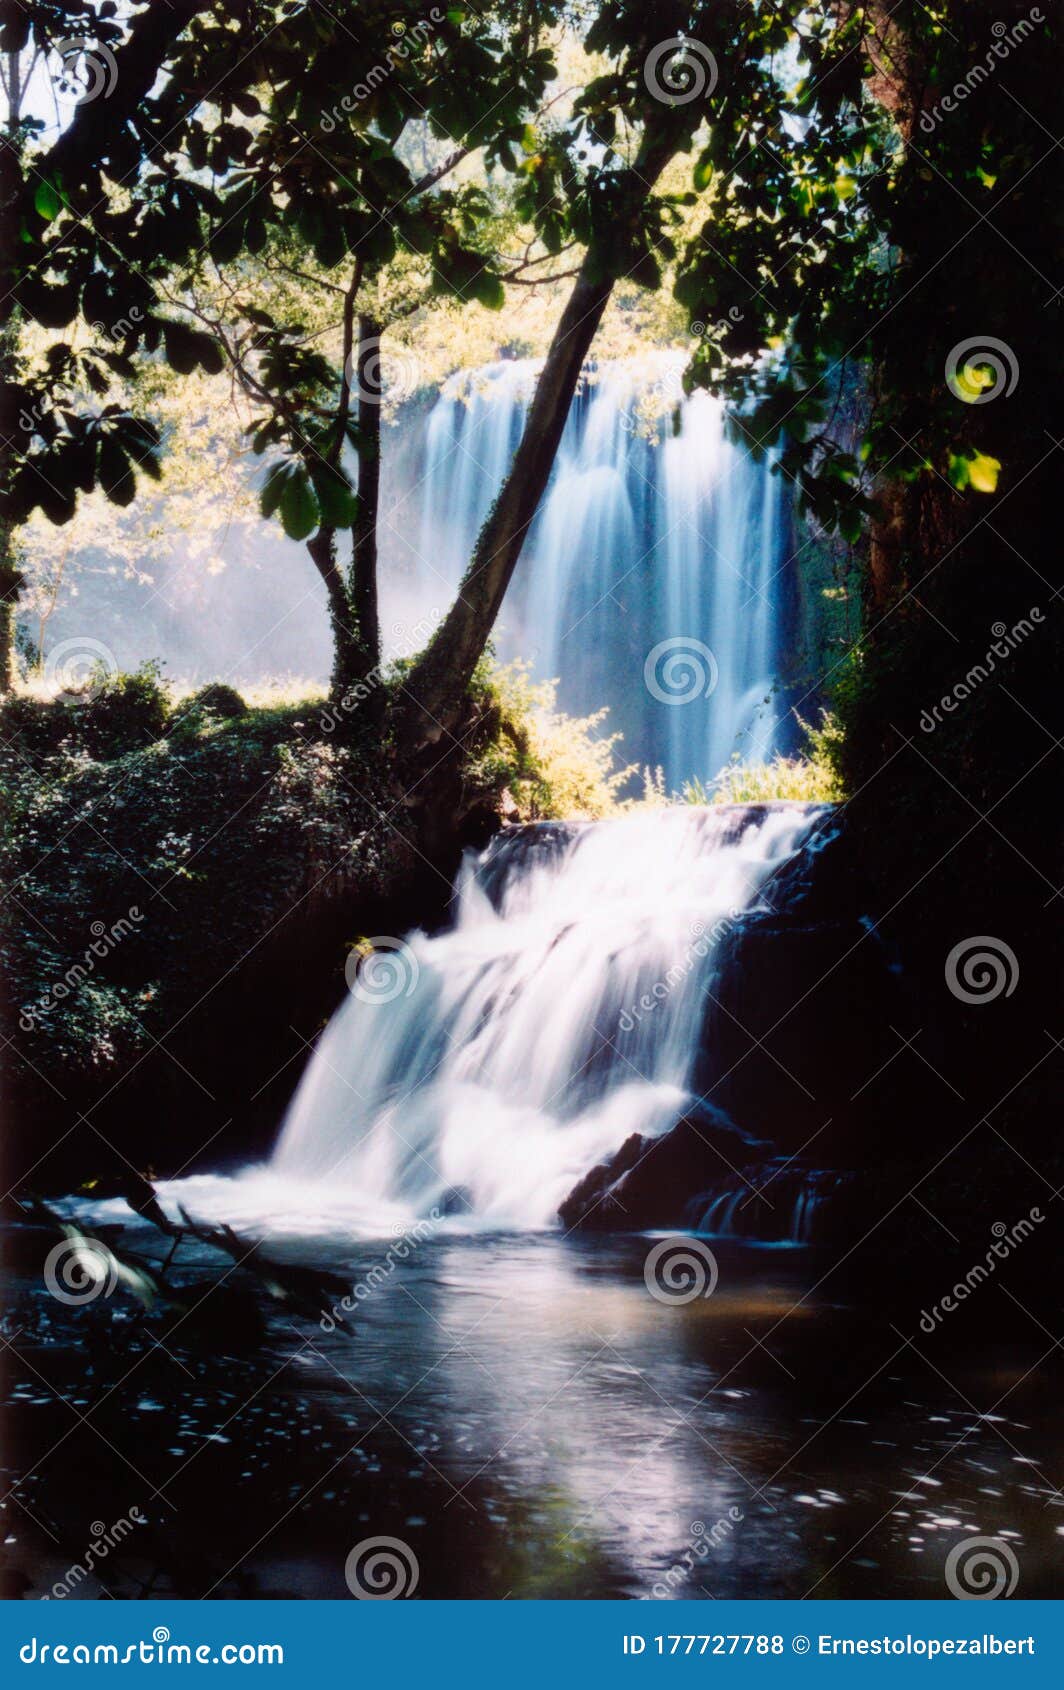 horsetail waterfall